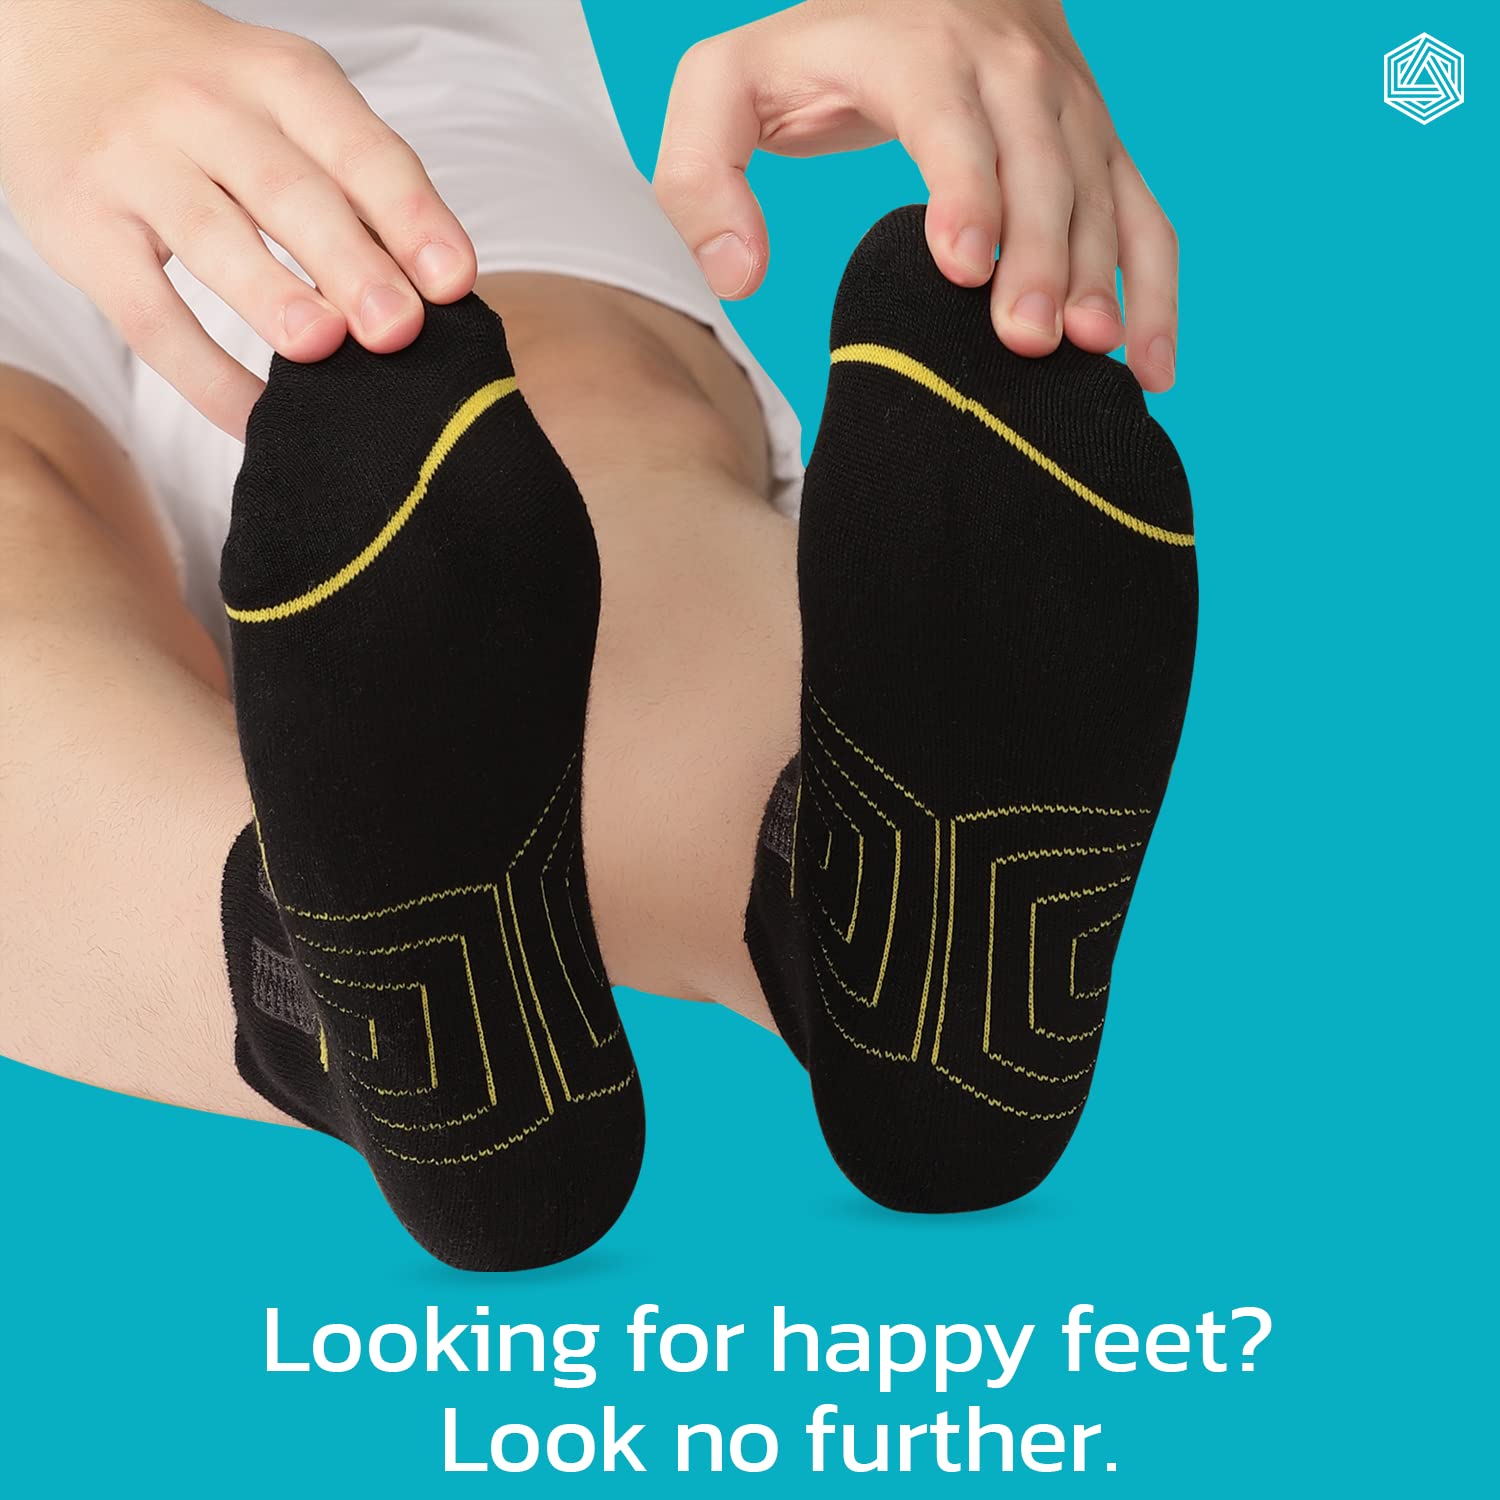 Boldfit Athletic socks for Men & women